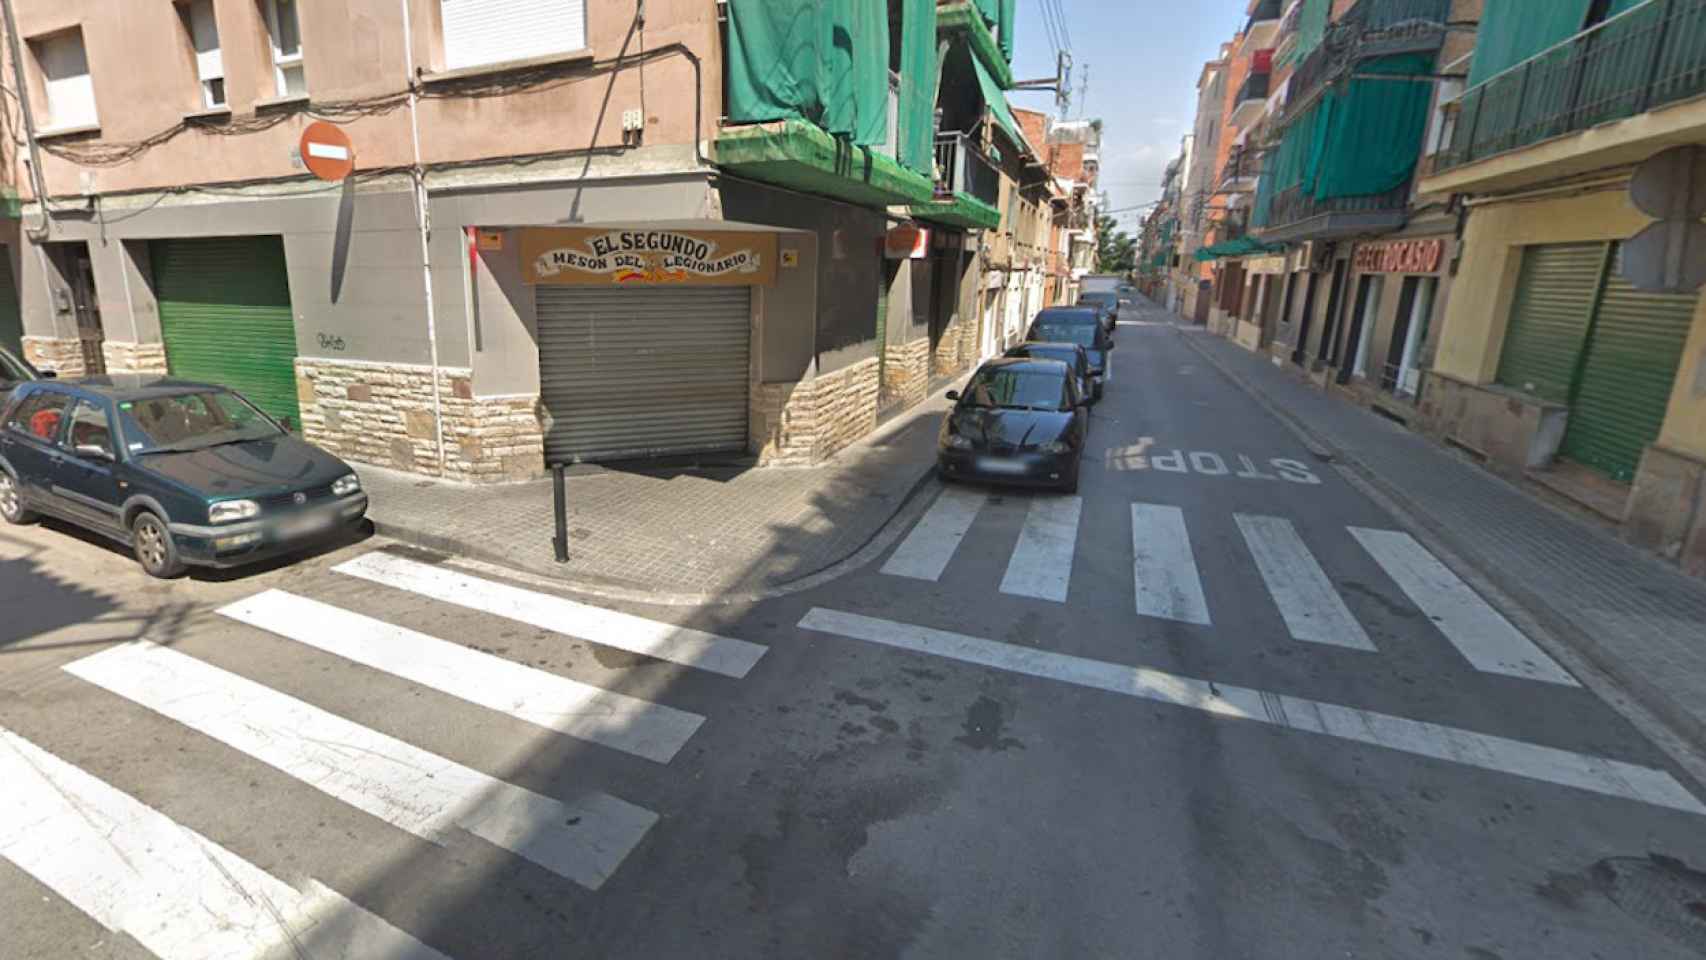 Intersección de las calles del Piral y Ramón y Cajal de Premià de Mar, donde ocurrió la agresión / GOOGLE STREET VIEW